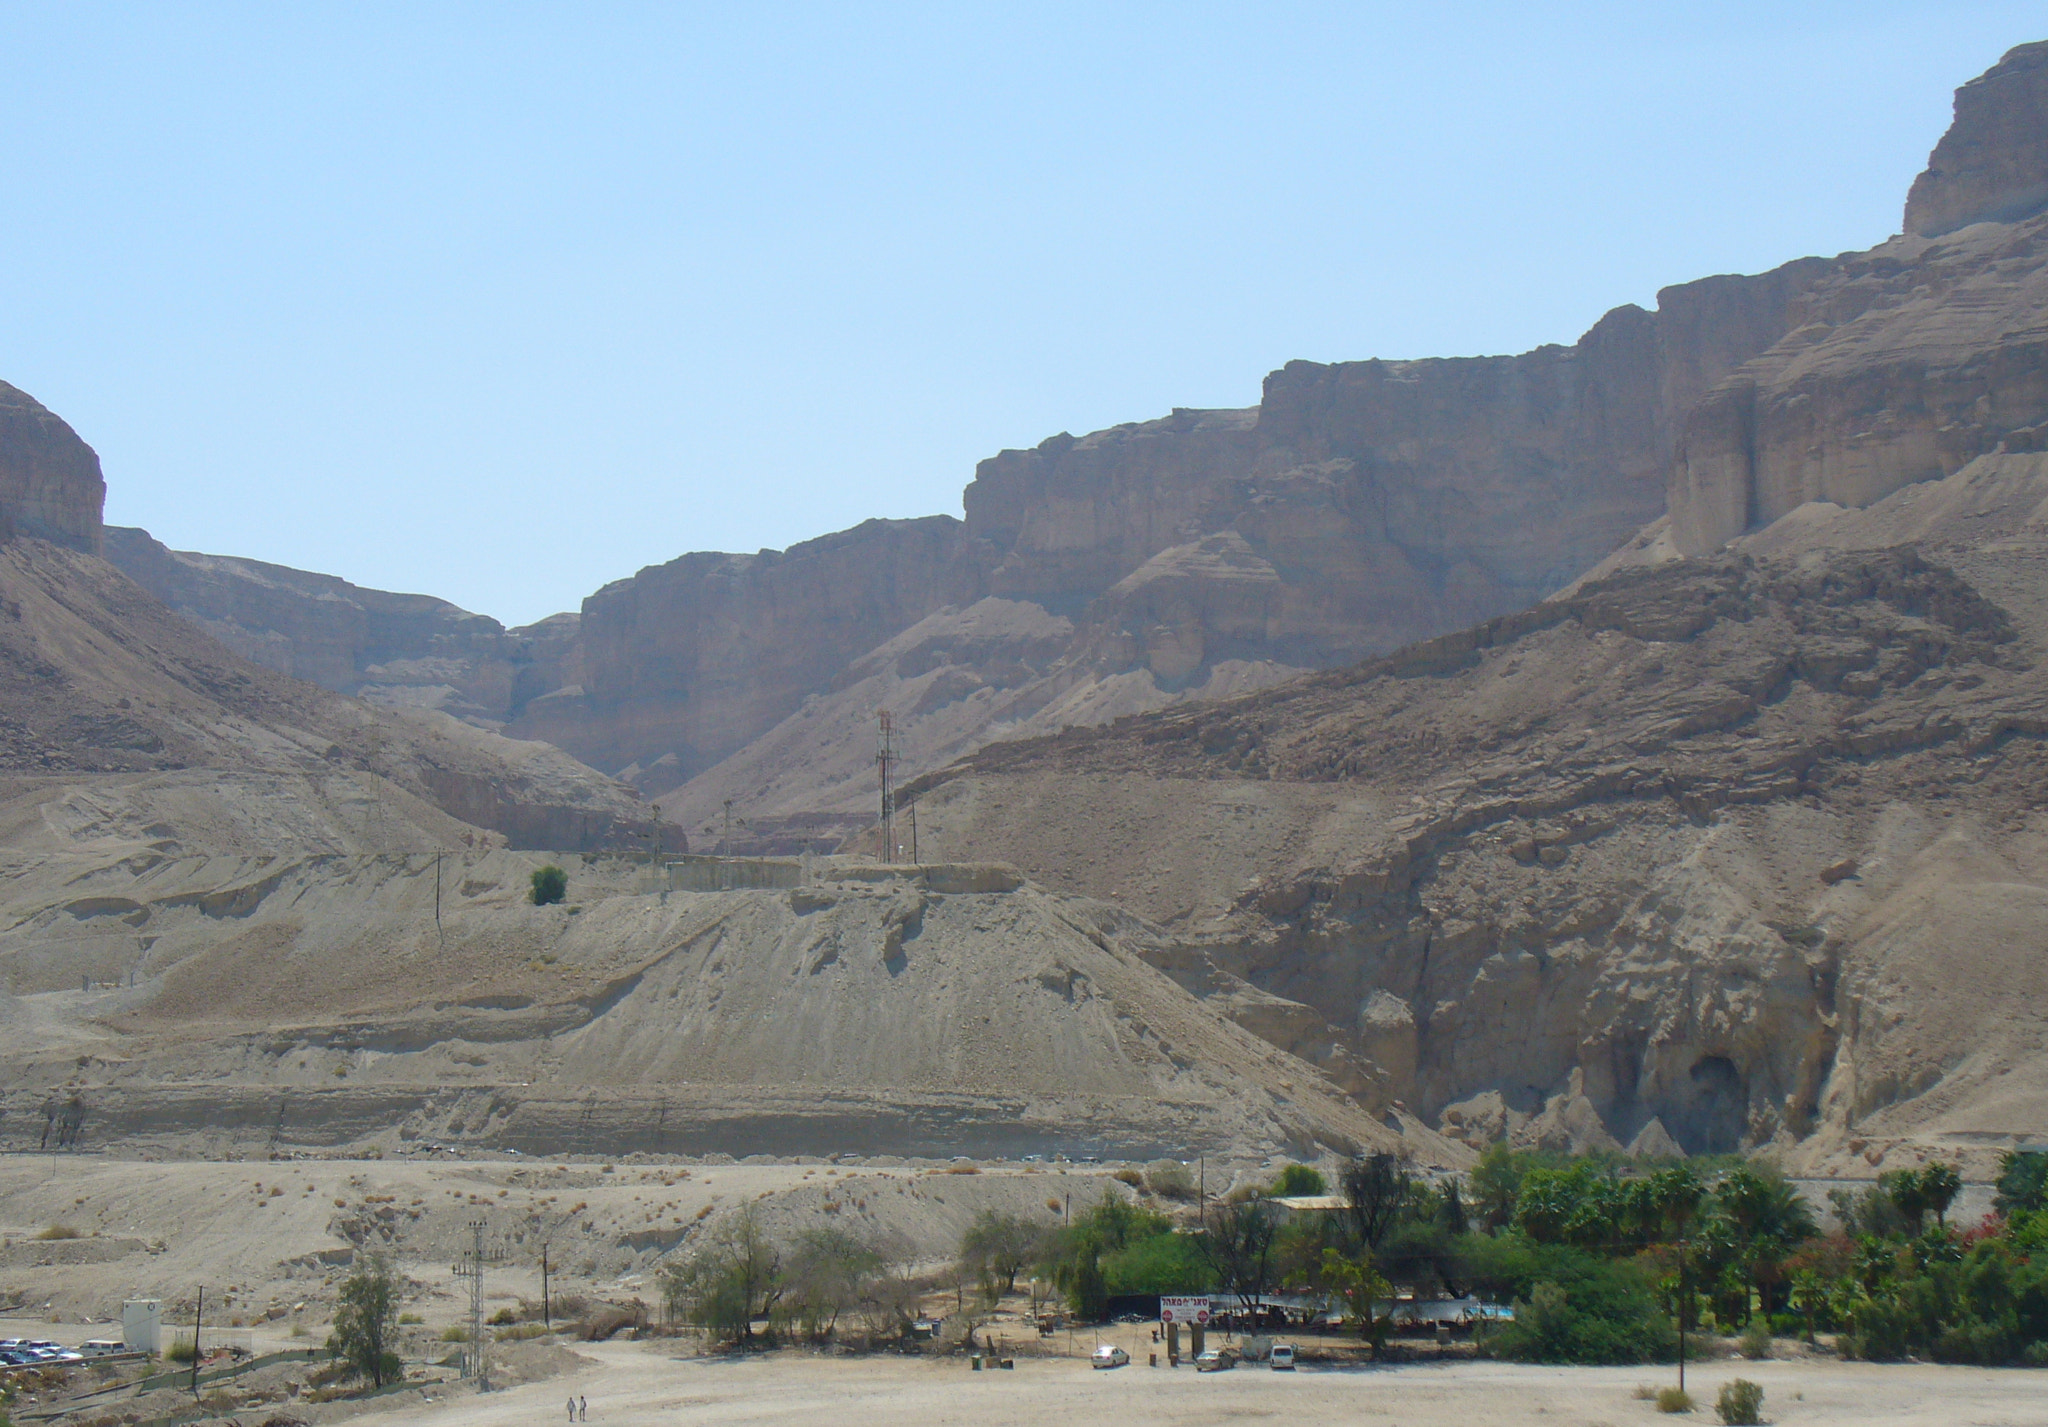 Panasonic DMC-LZ5 sample photo. A view to wadi en bokek photography